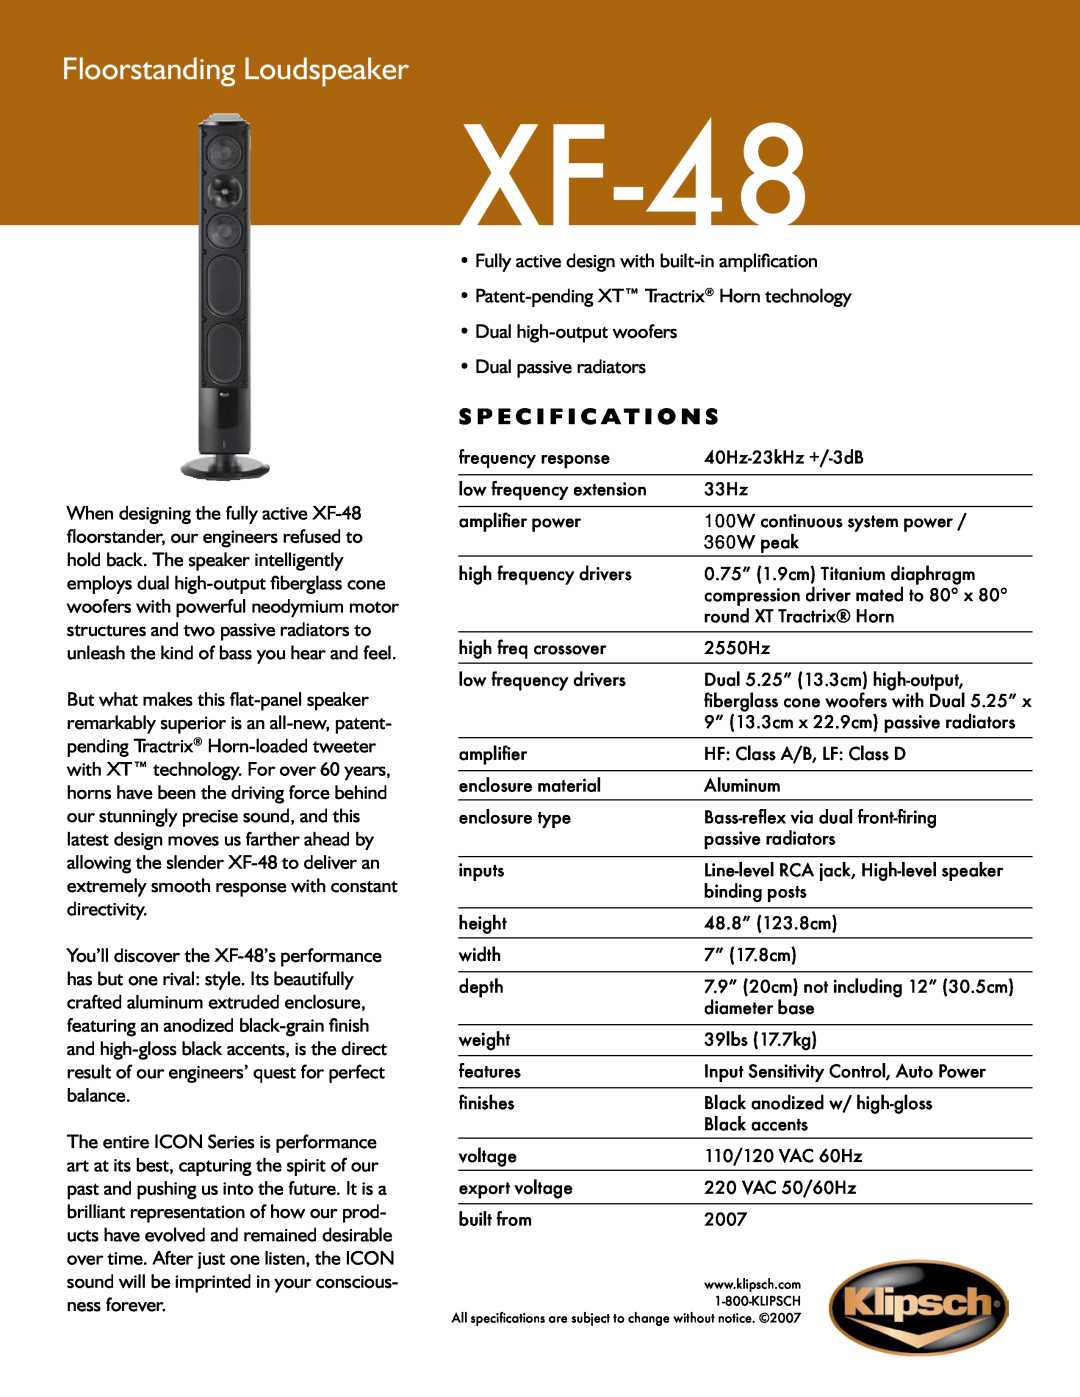 Klipsch XF-48 specifications Floorstanding Loudspeaker, S p e c i f i c a t i o n s 